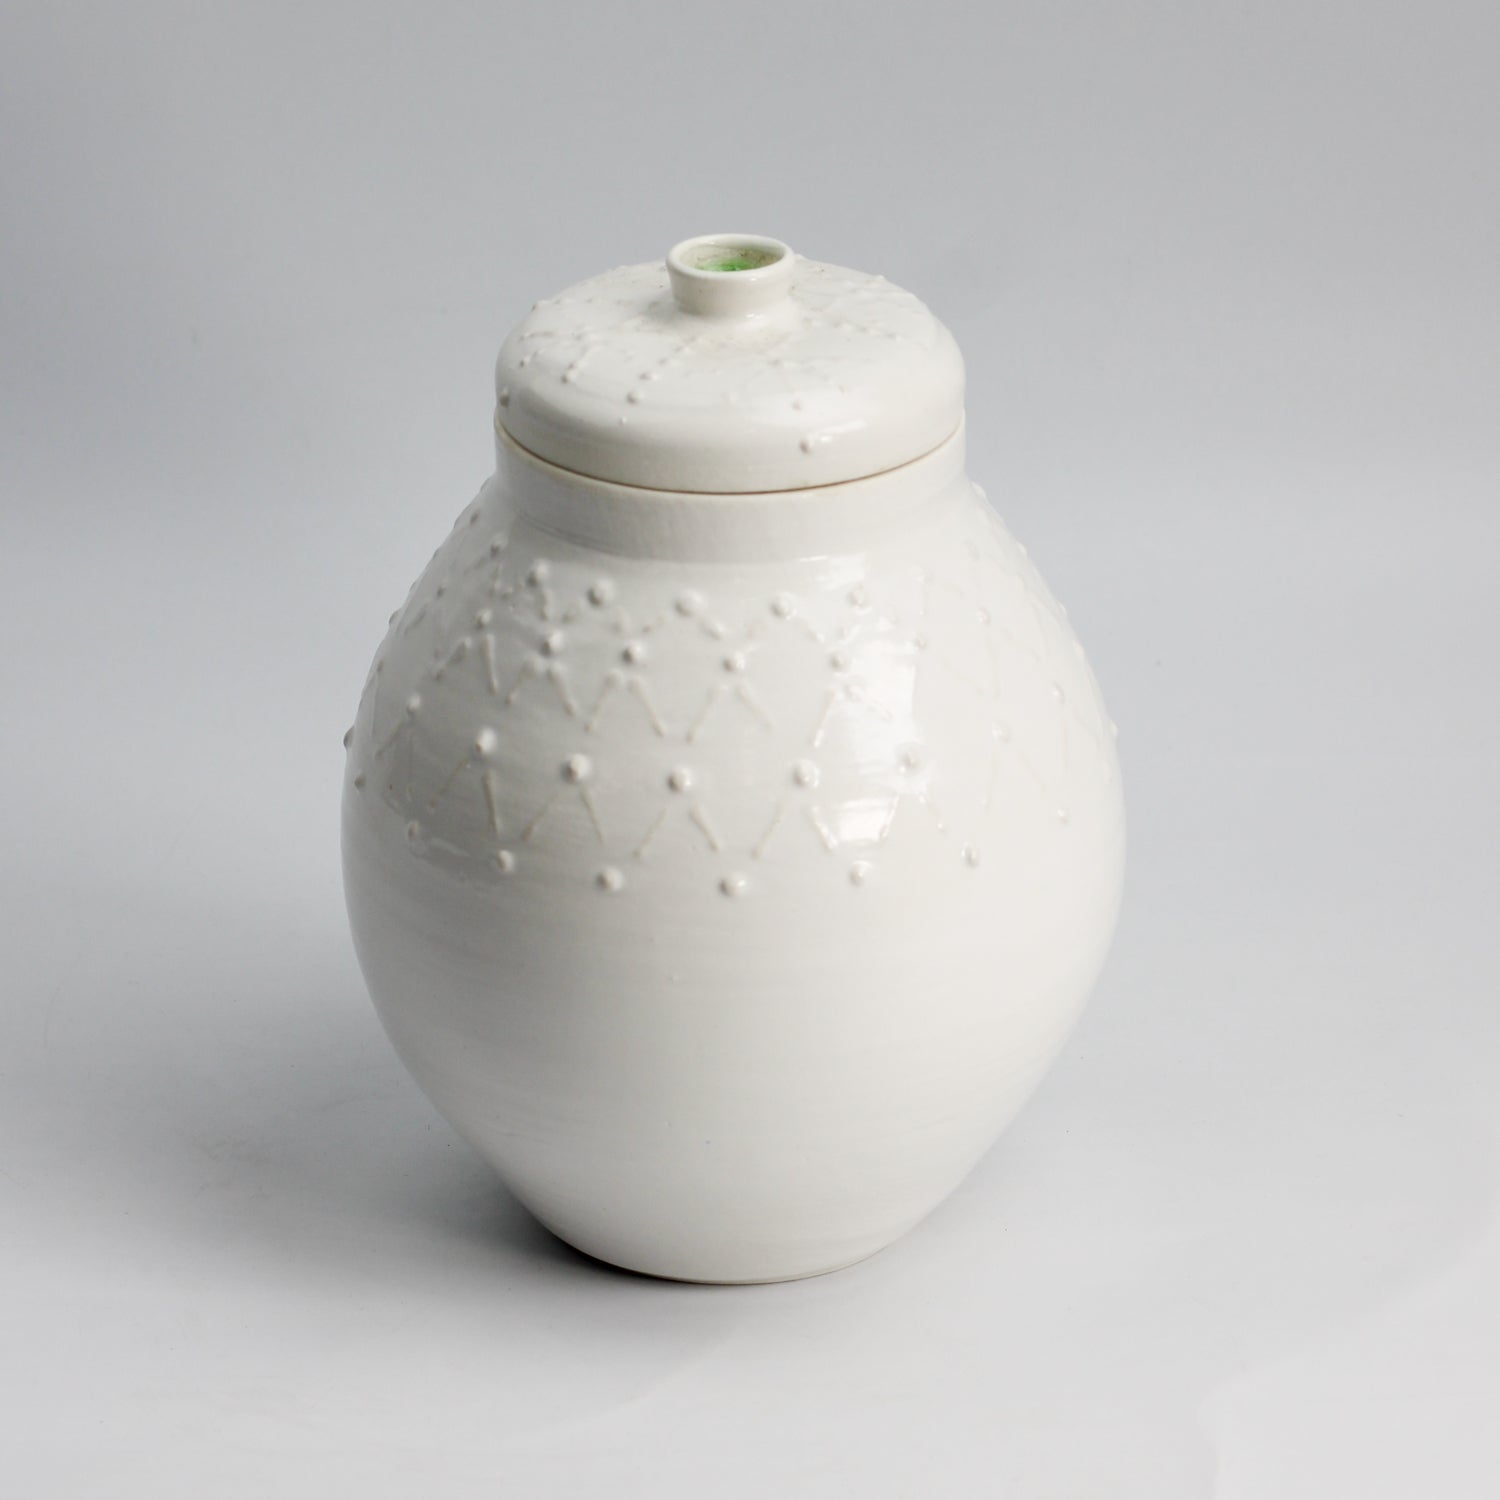 Portugese-style white urn